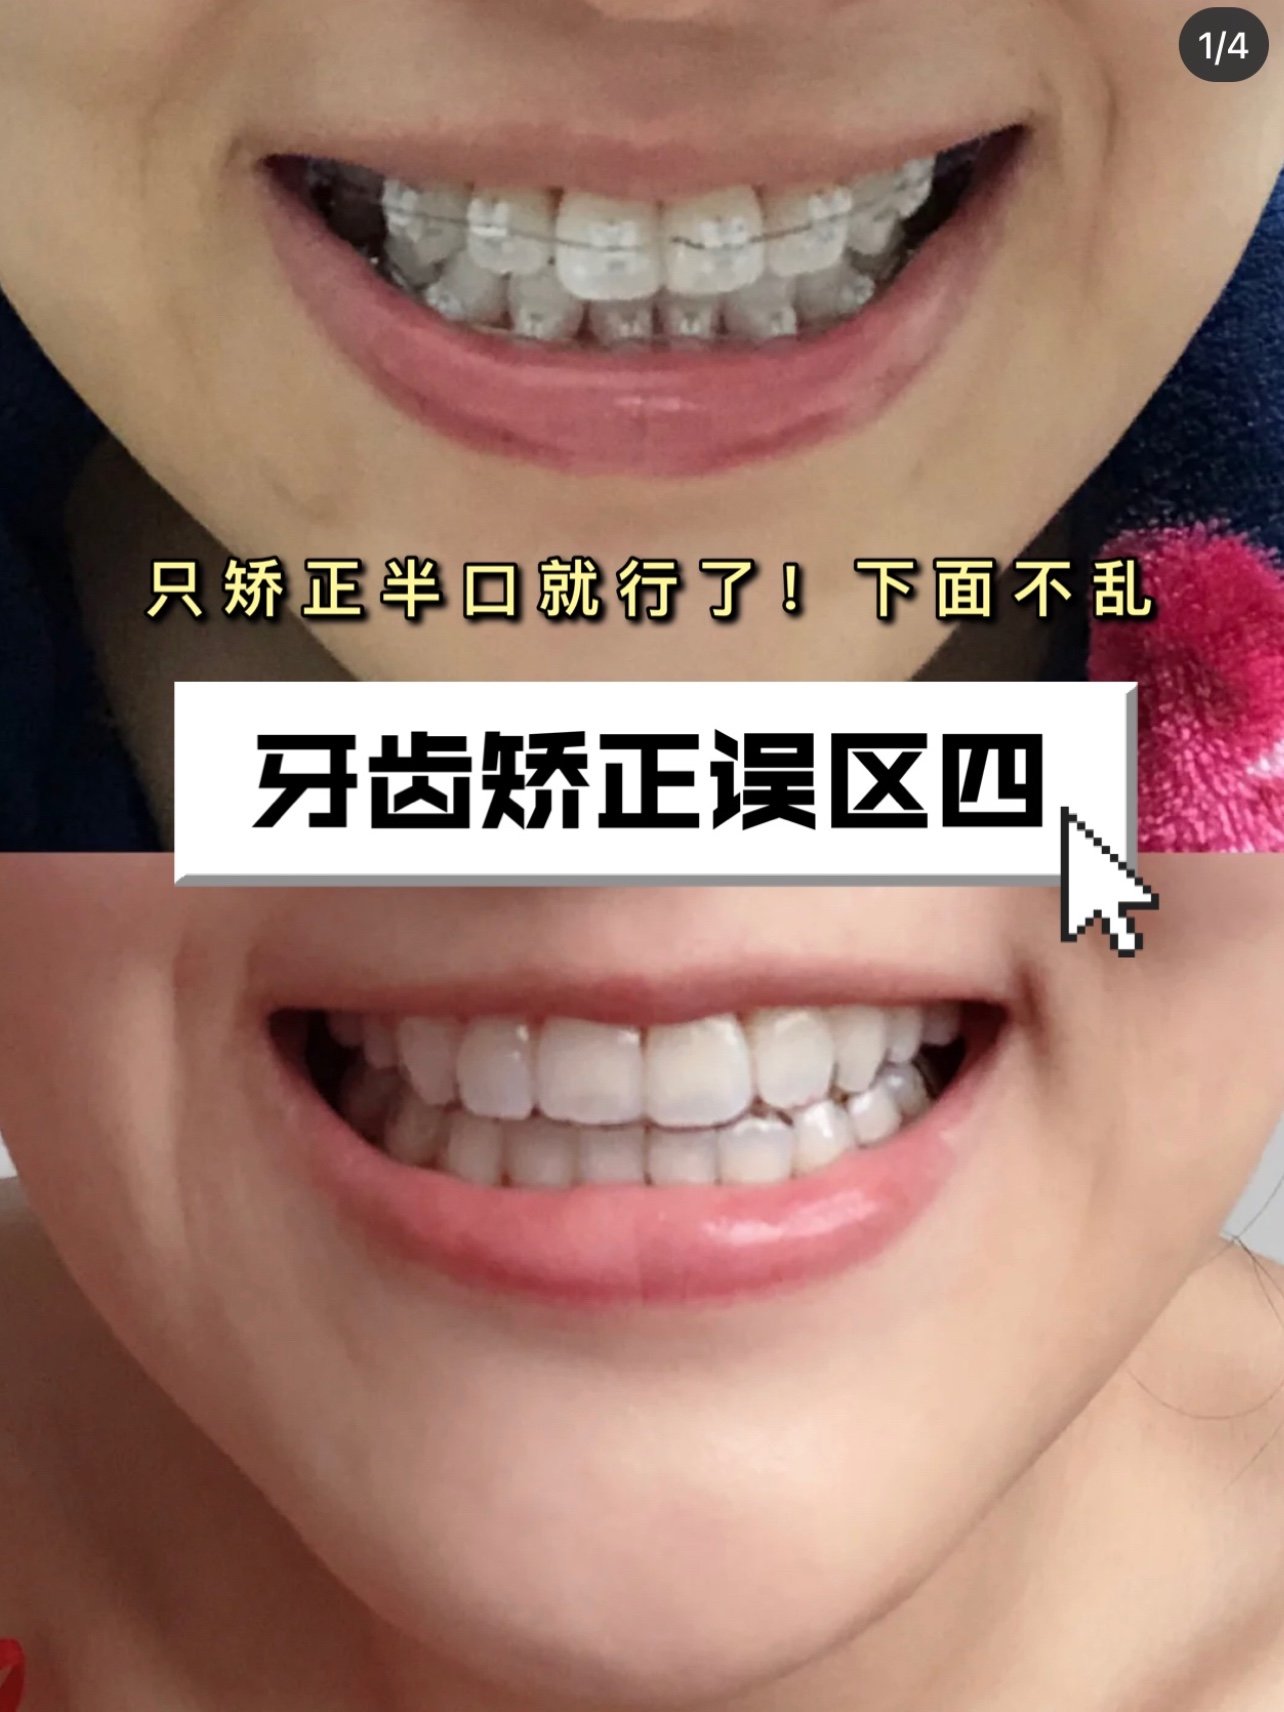 牙齿矫正误区:可以只矫正半口!